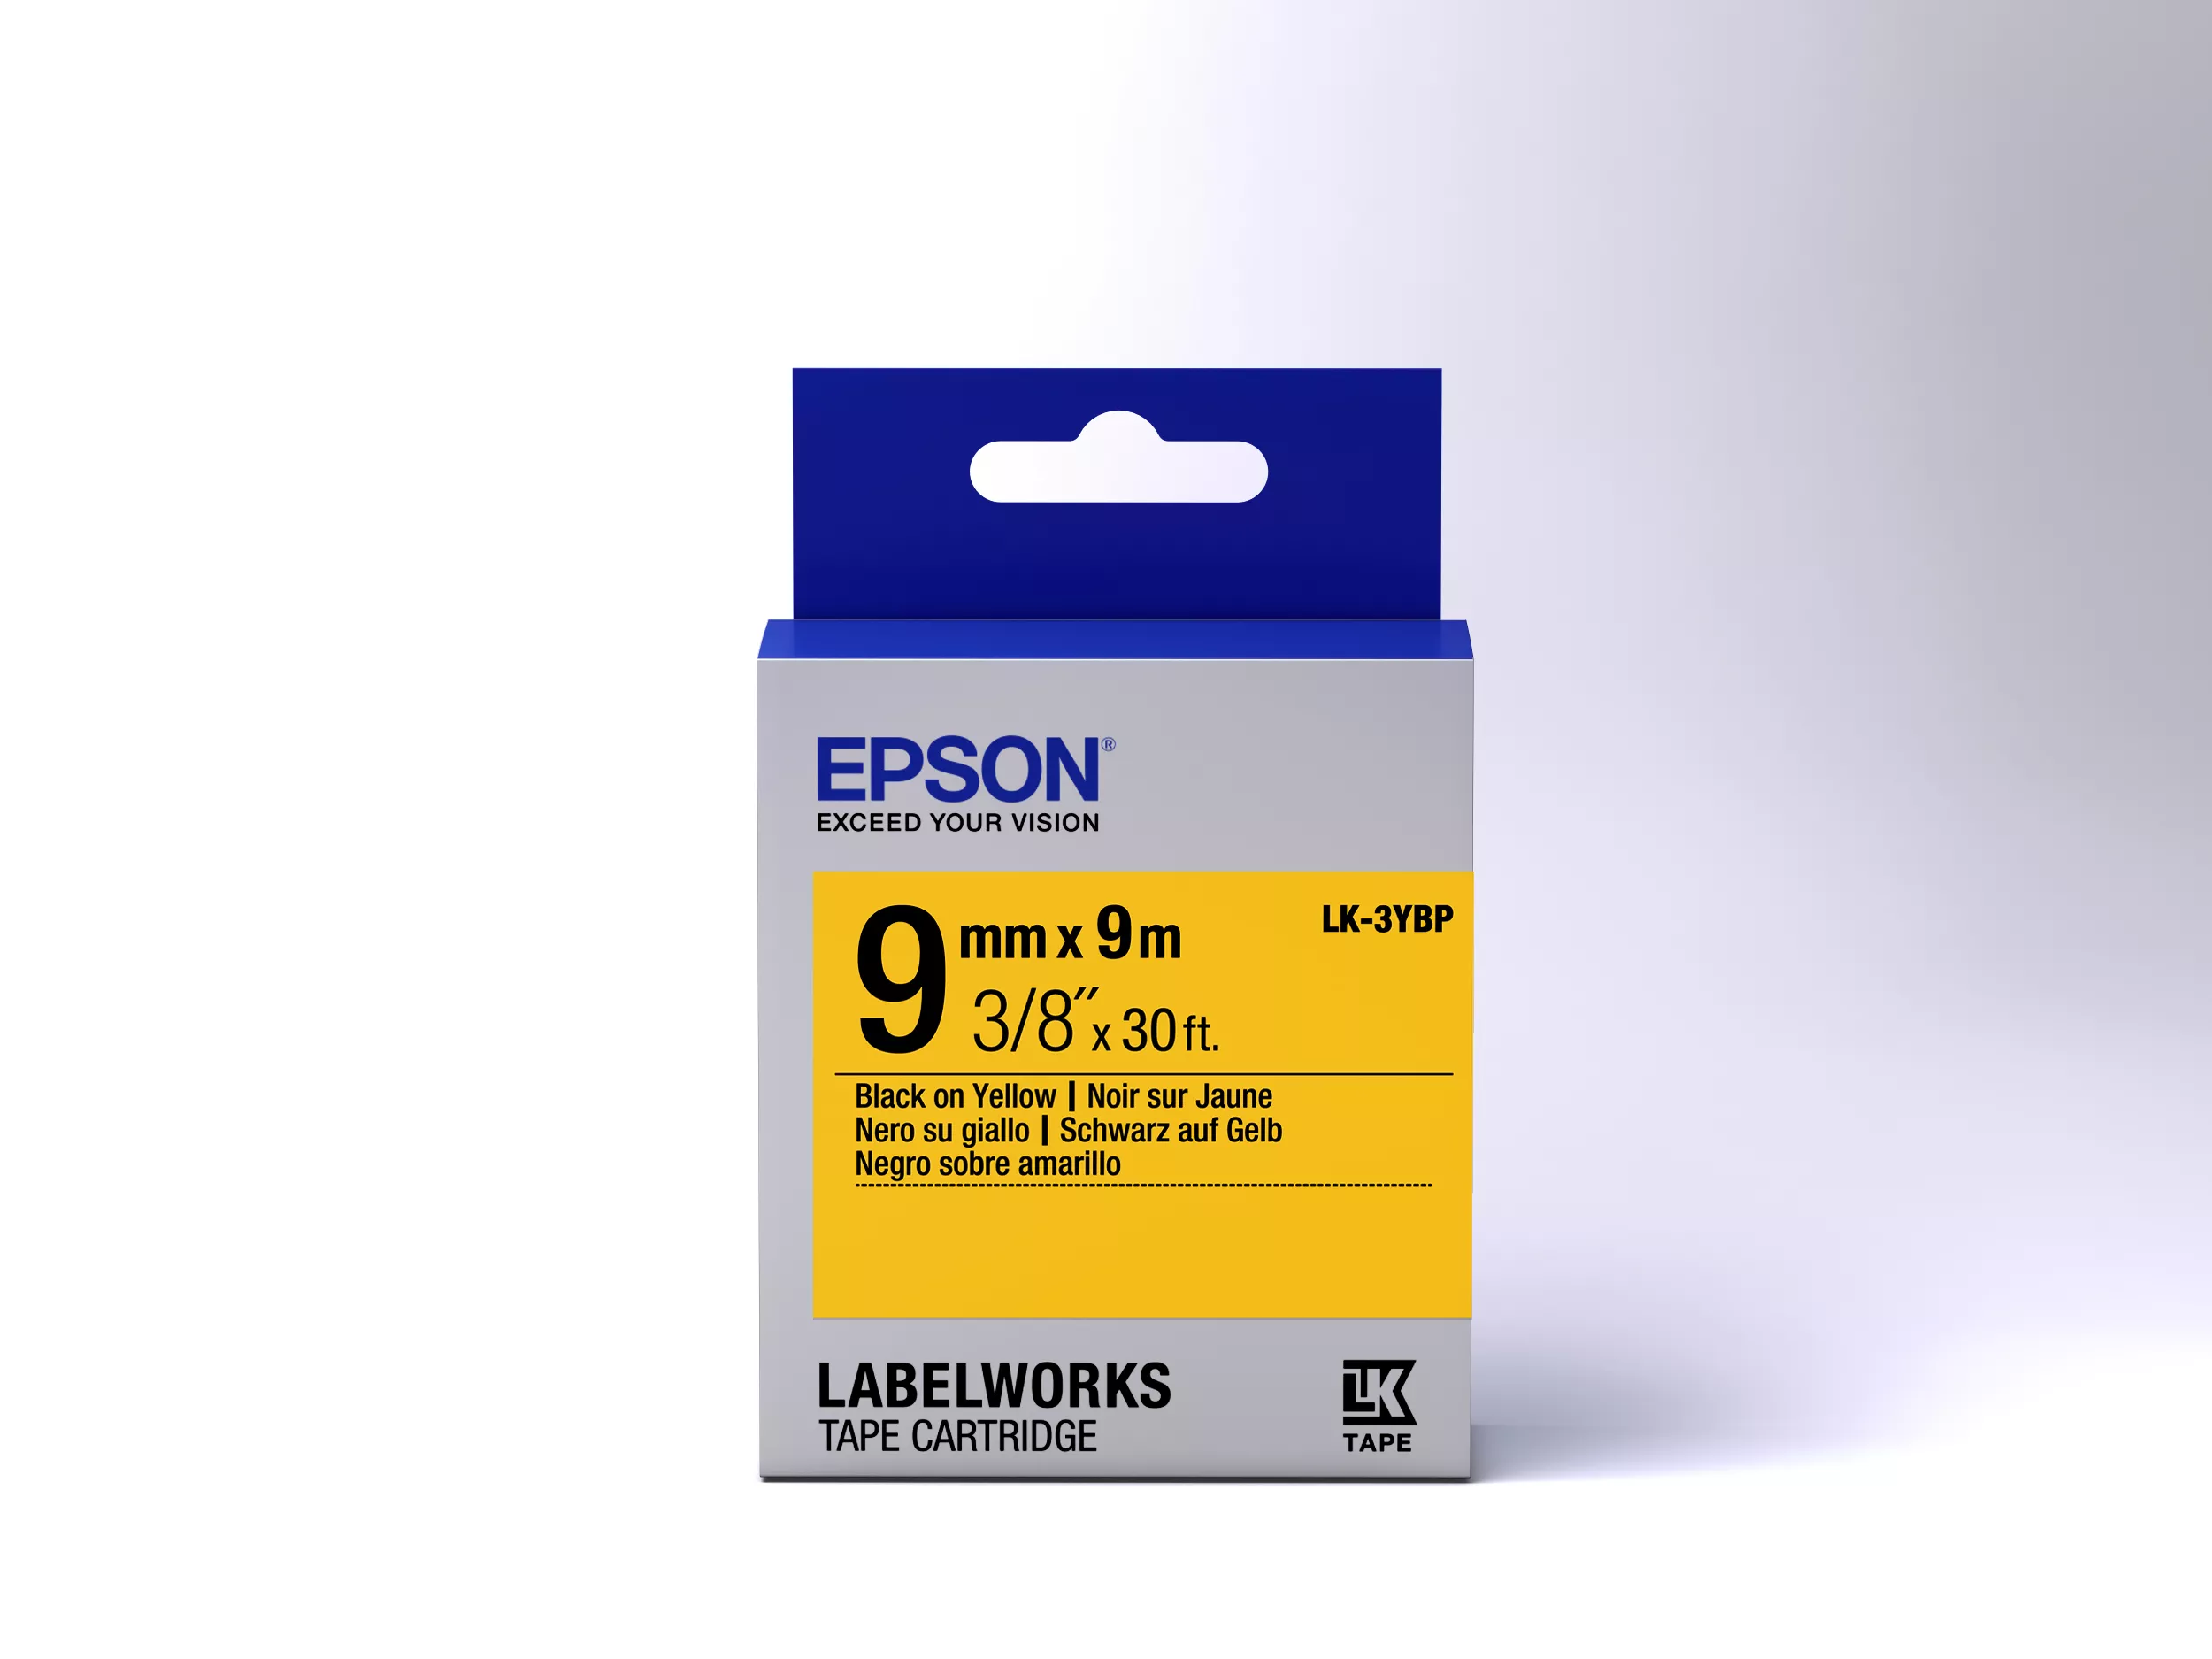 Vente Epson LK-3YBP - Couleur Pastel - Noir sur Epson au meilleur prix - visuel 2